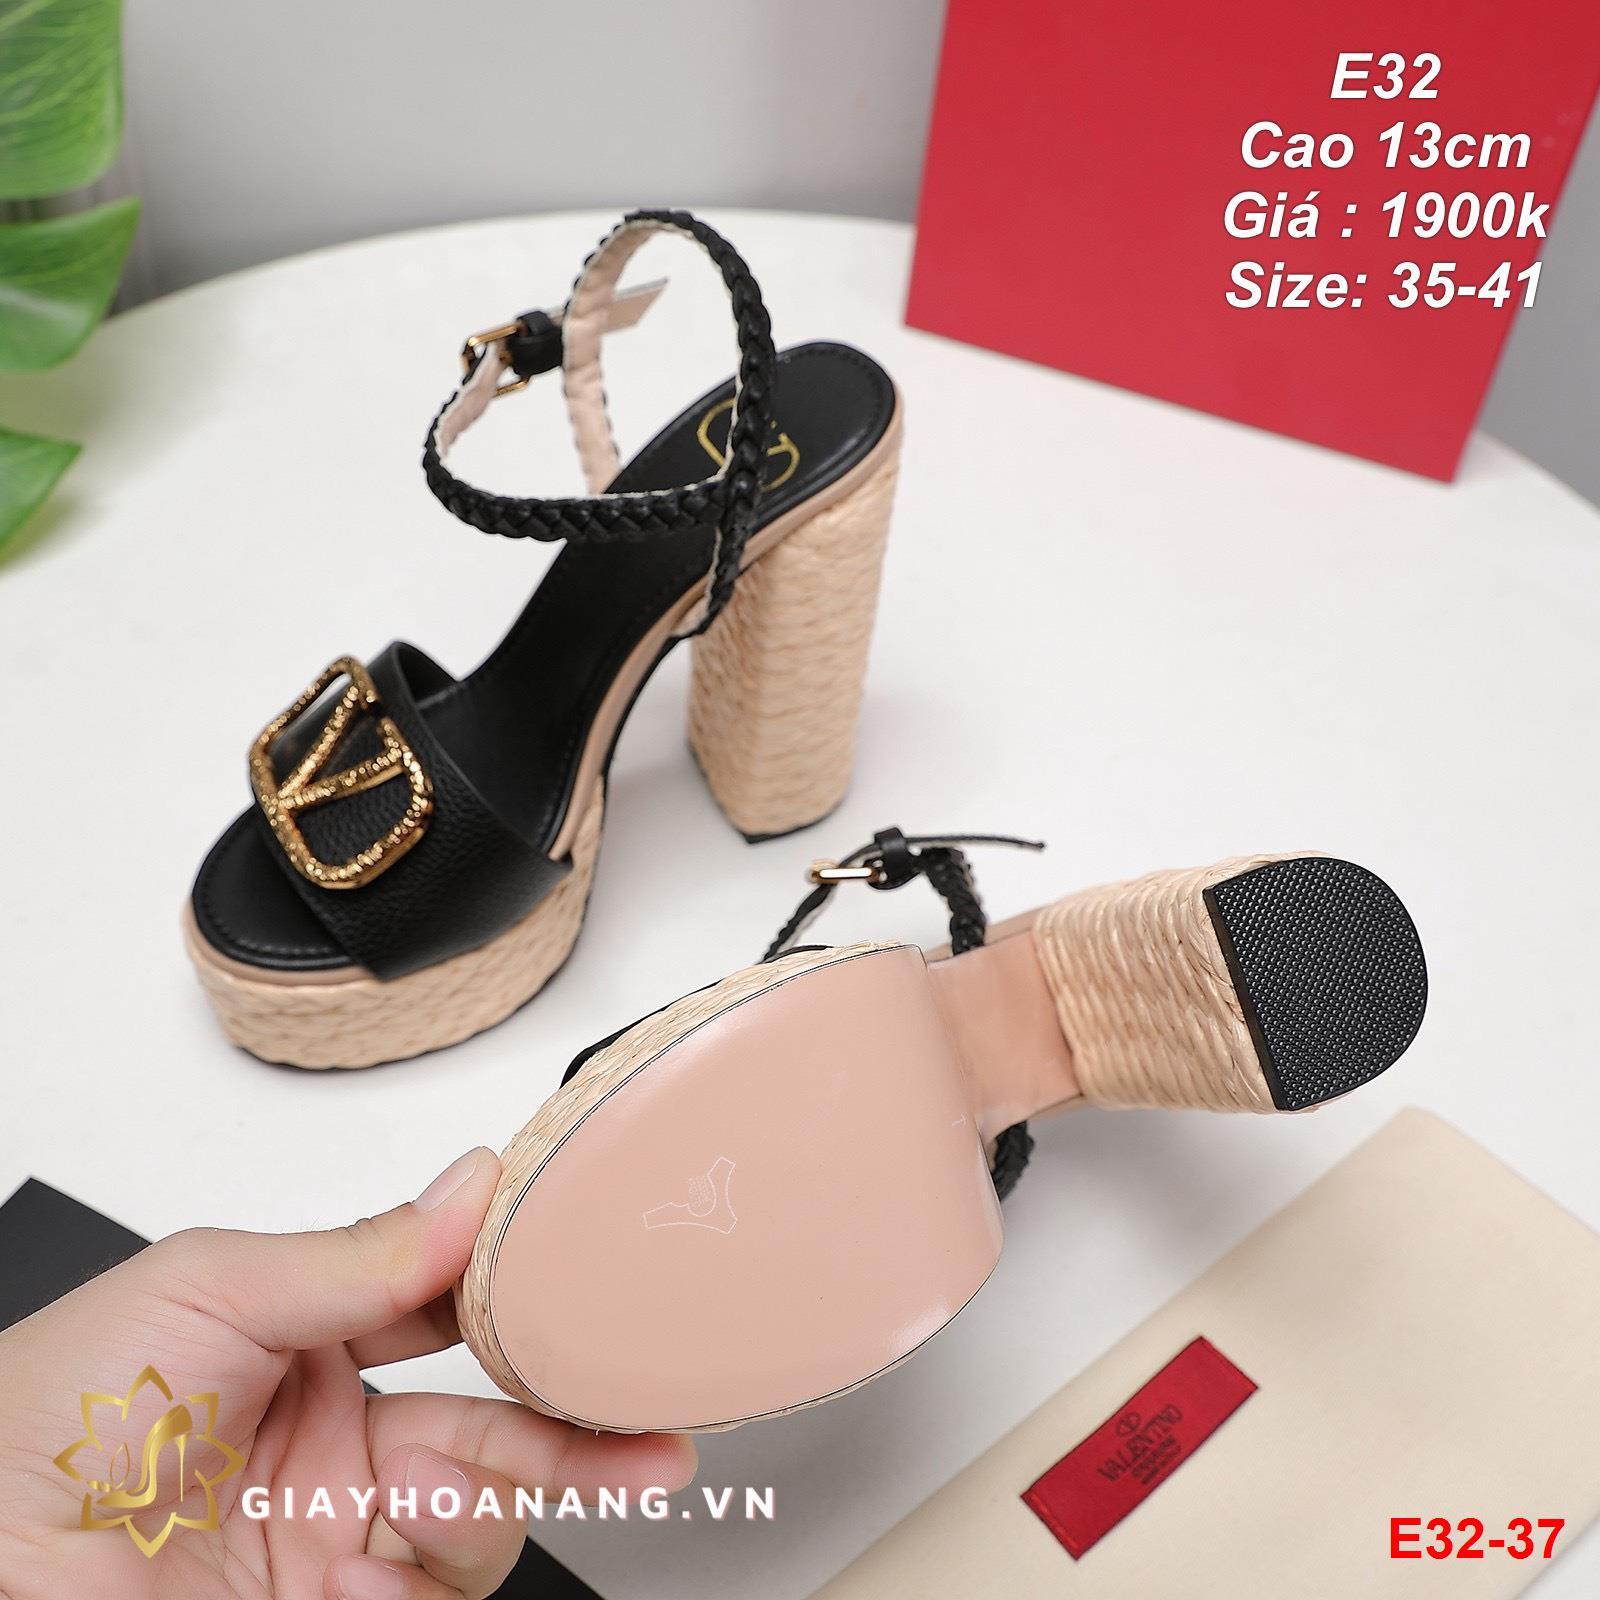 E32-37 Valentino sandal cao 13cm siêu cấp